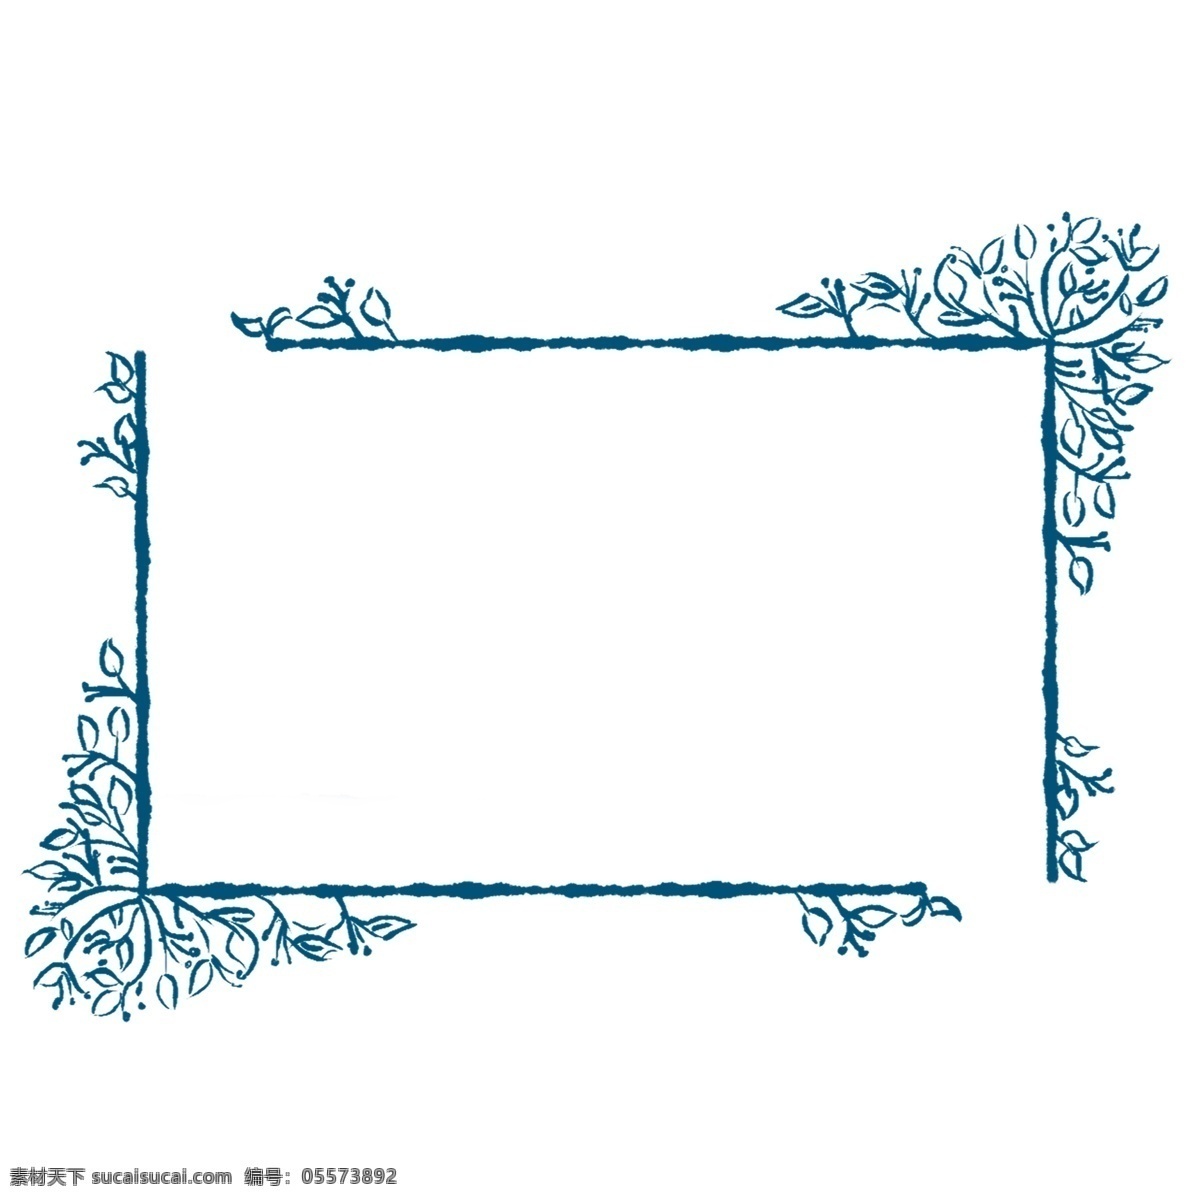 植物 边框 手绘 插画 植物边框 蓝色的边框 手绘边框 创意边框 可爱的边框 边框装饰 边框插画 立体边框